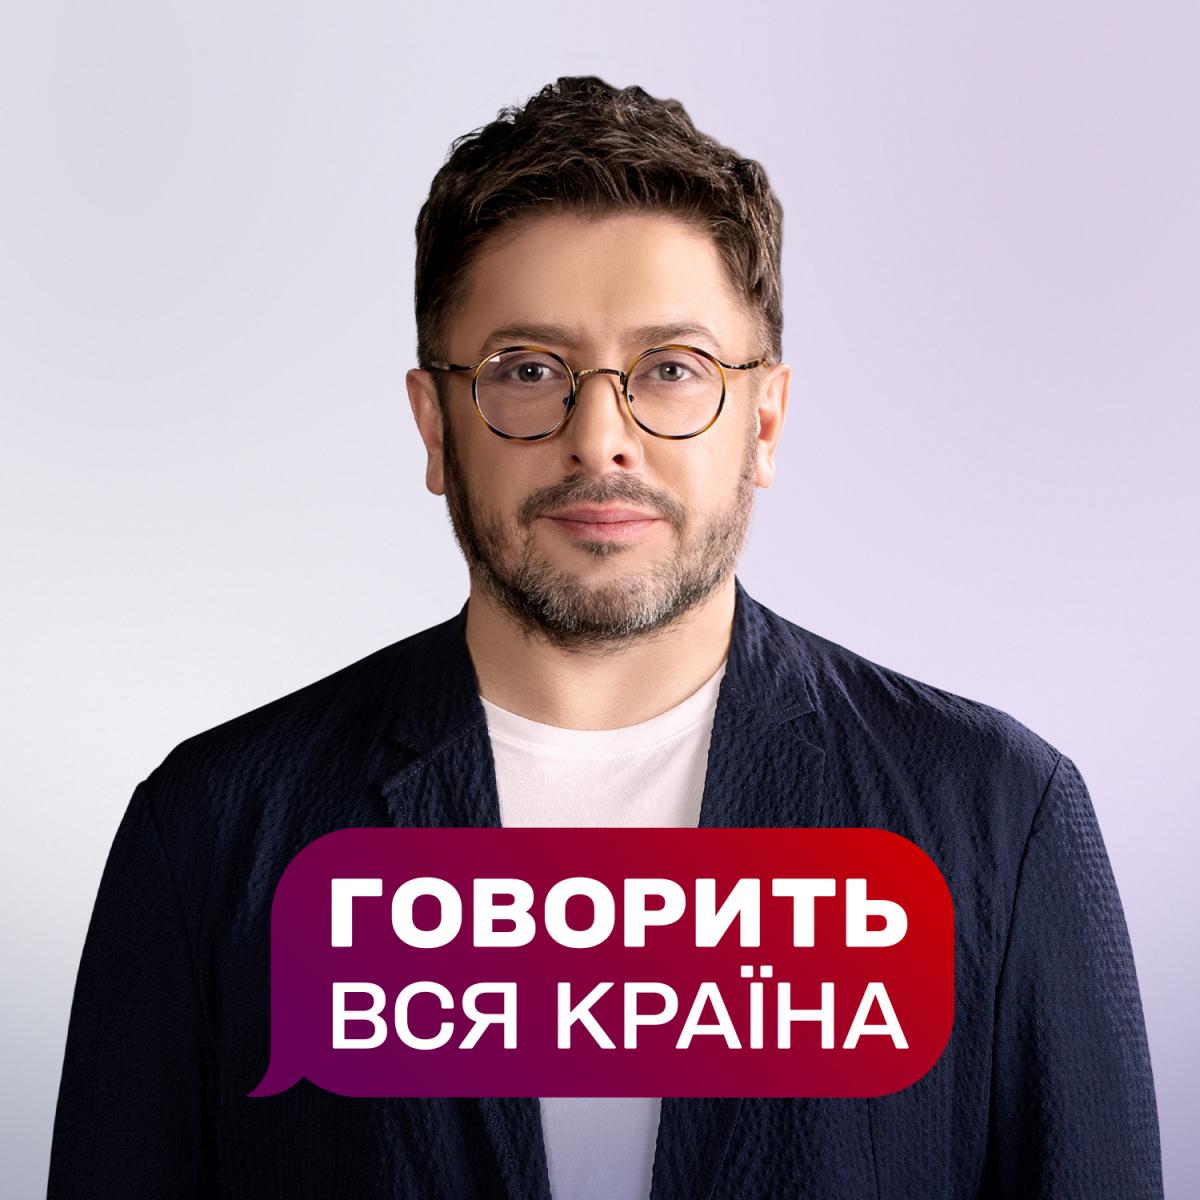 Говорить вся країна з Олексієм Сухановим - нове ток-шоу від 1+1